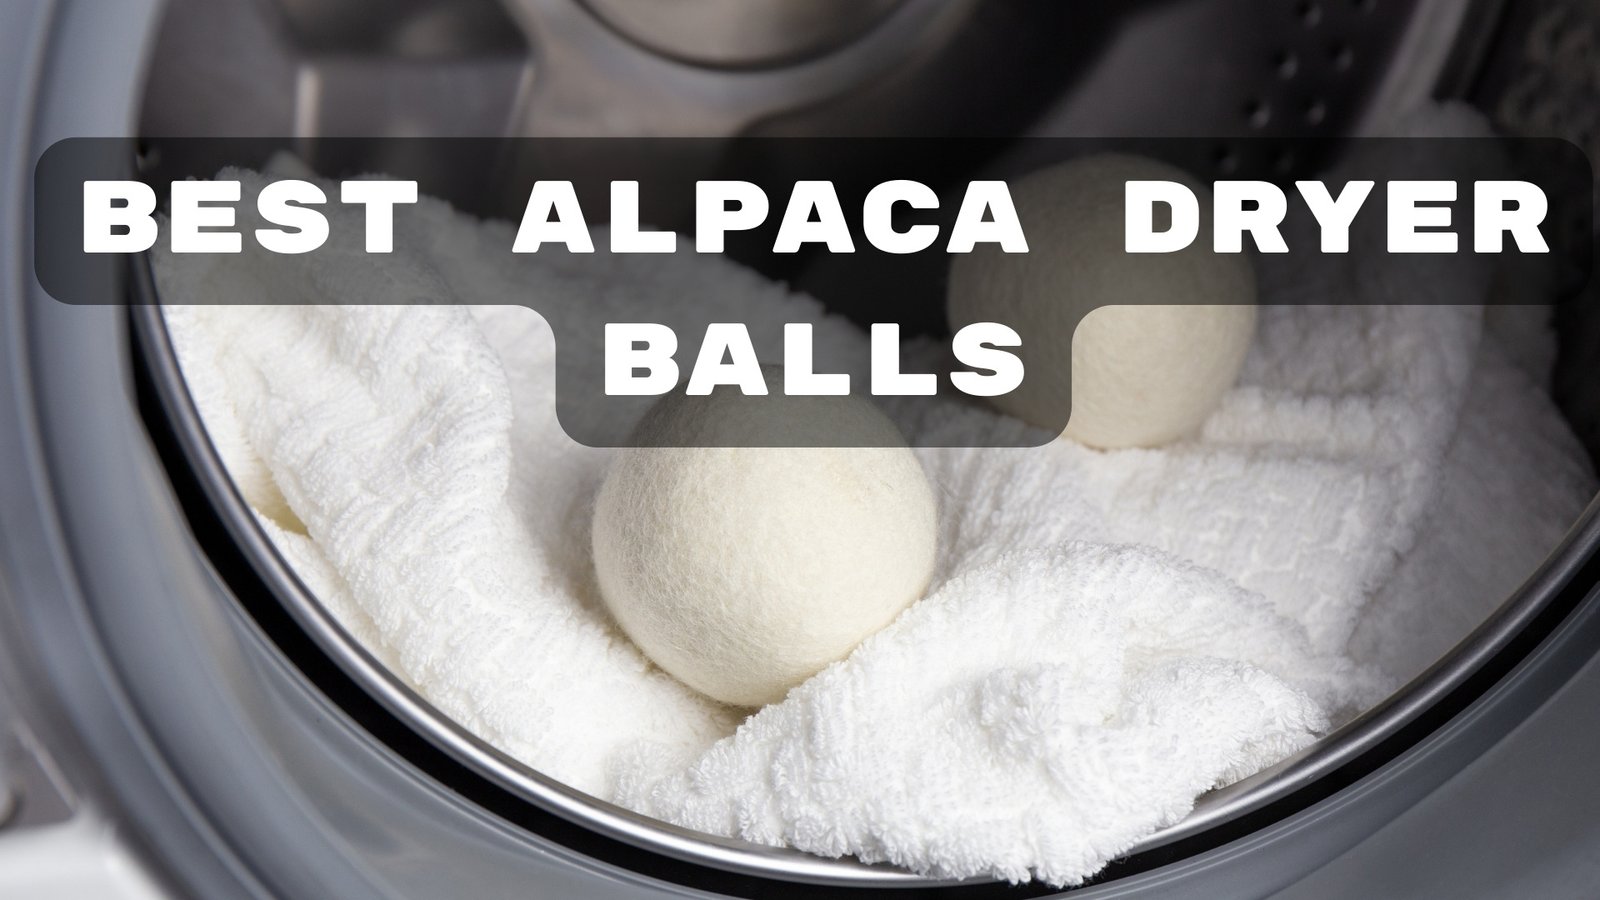 Best Alpaca Dryer Balls